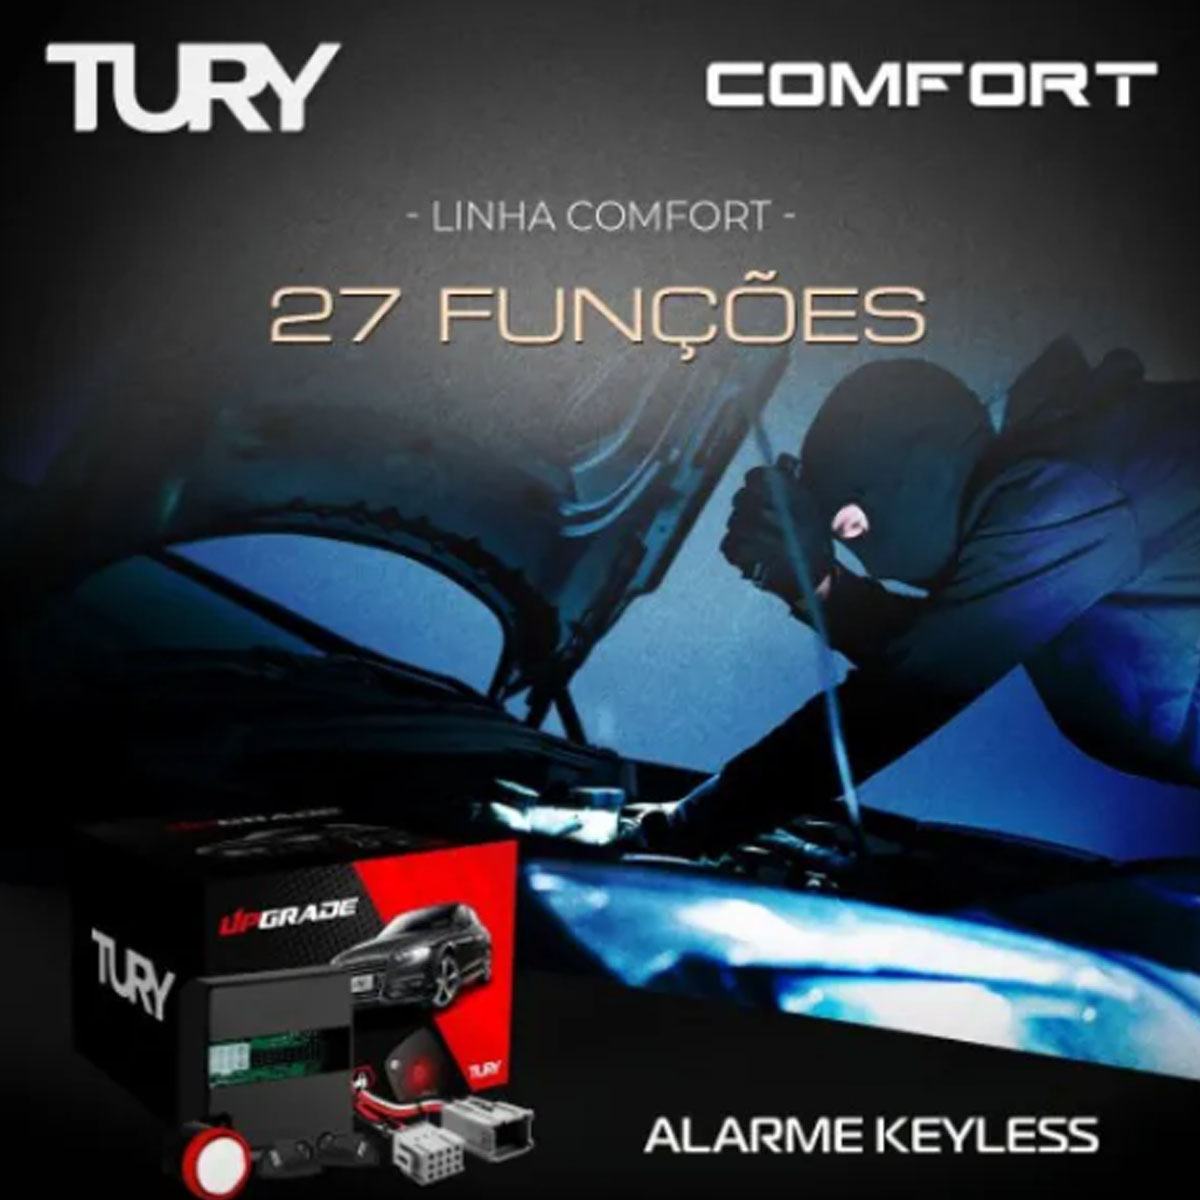 Alarme Tury 26 Funções Keyless Onix Prisma Spin S-10 Cobalt COMFORT1.1AA